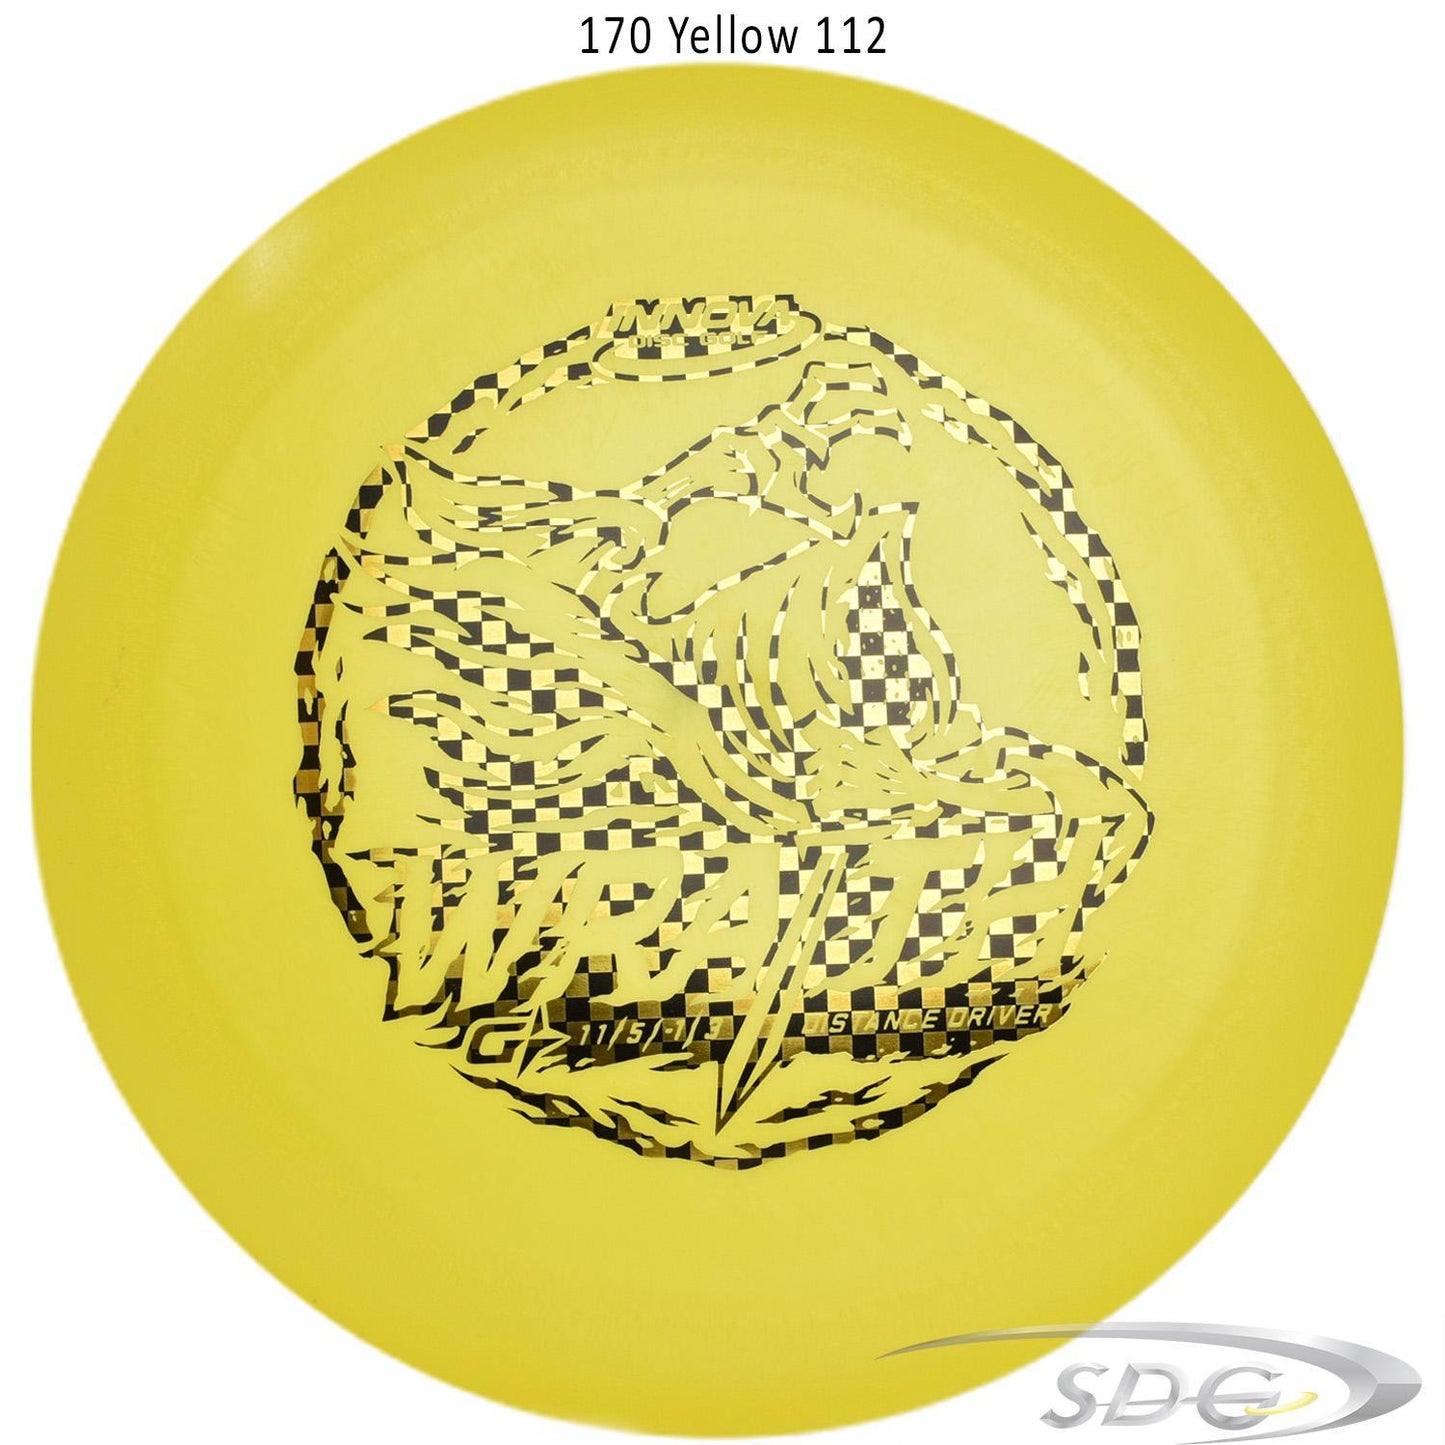 innova-gstar-wraith-disc-golf-distance-driver 170 Yellow 112 